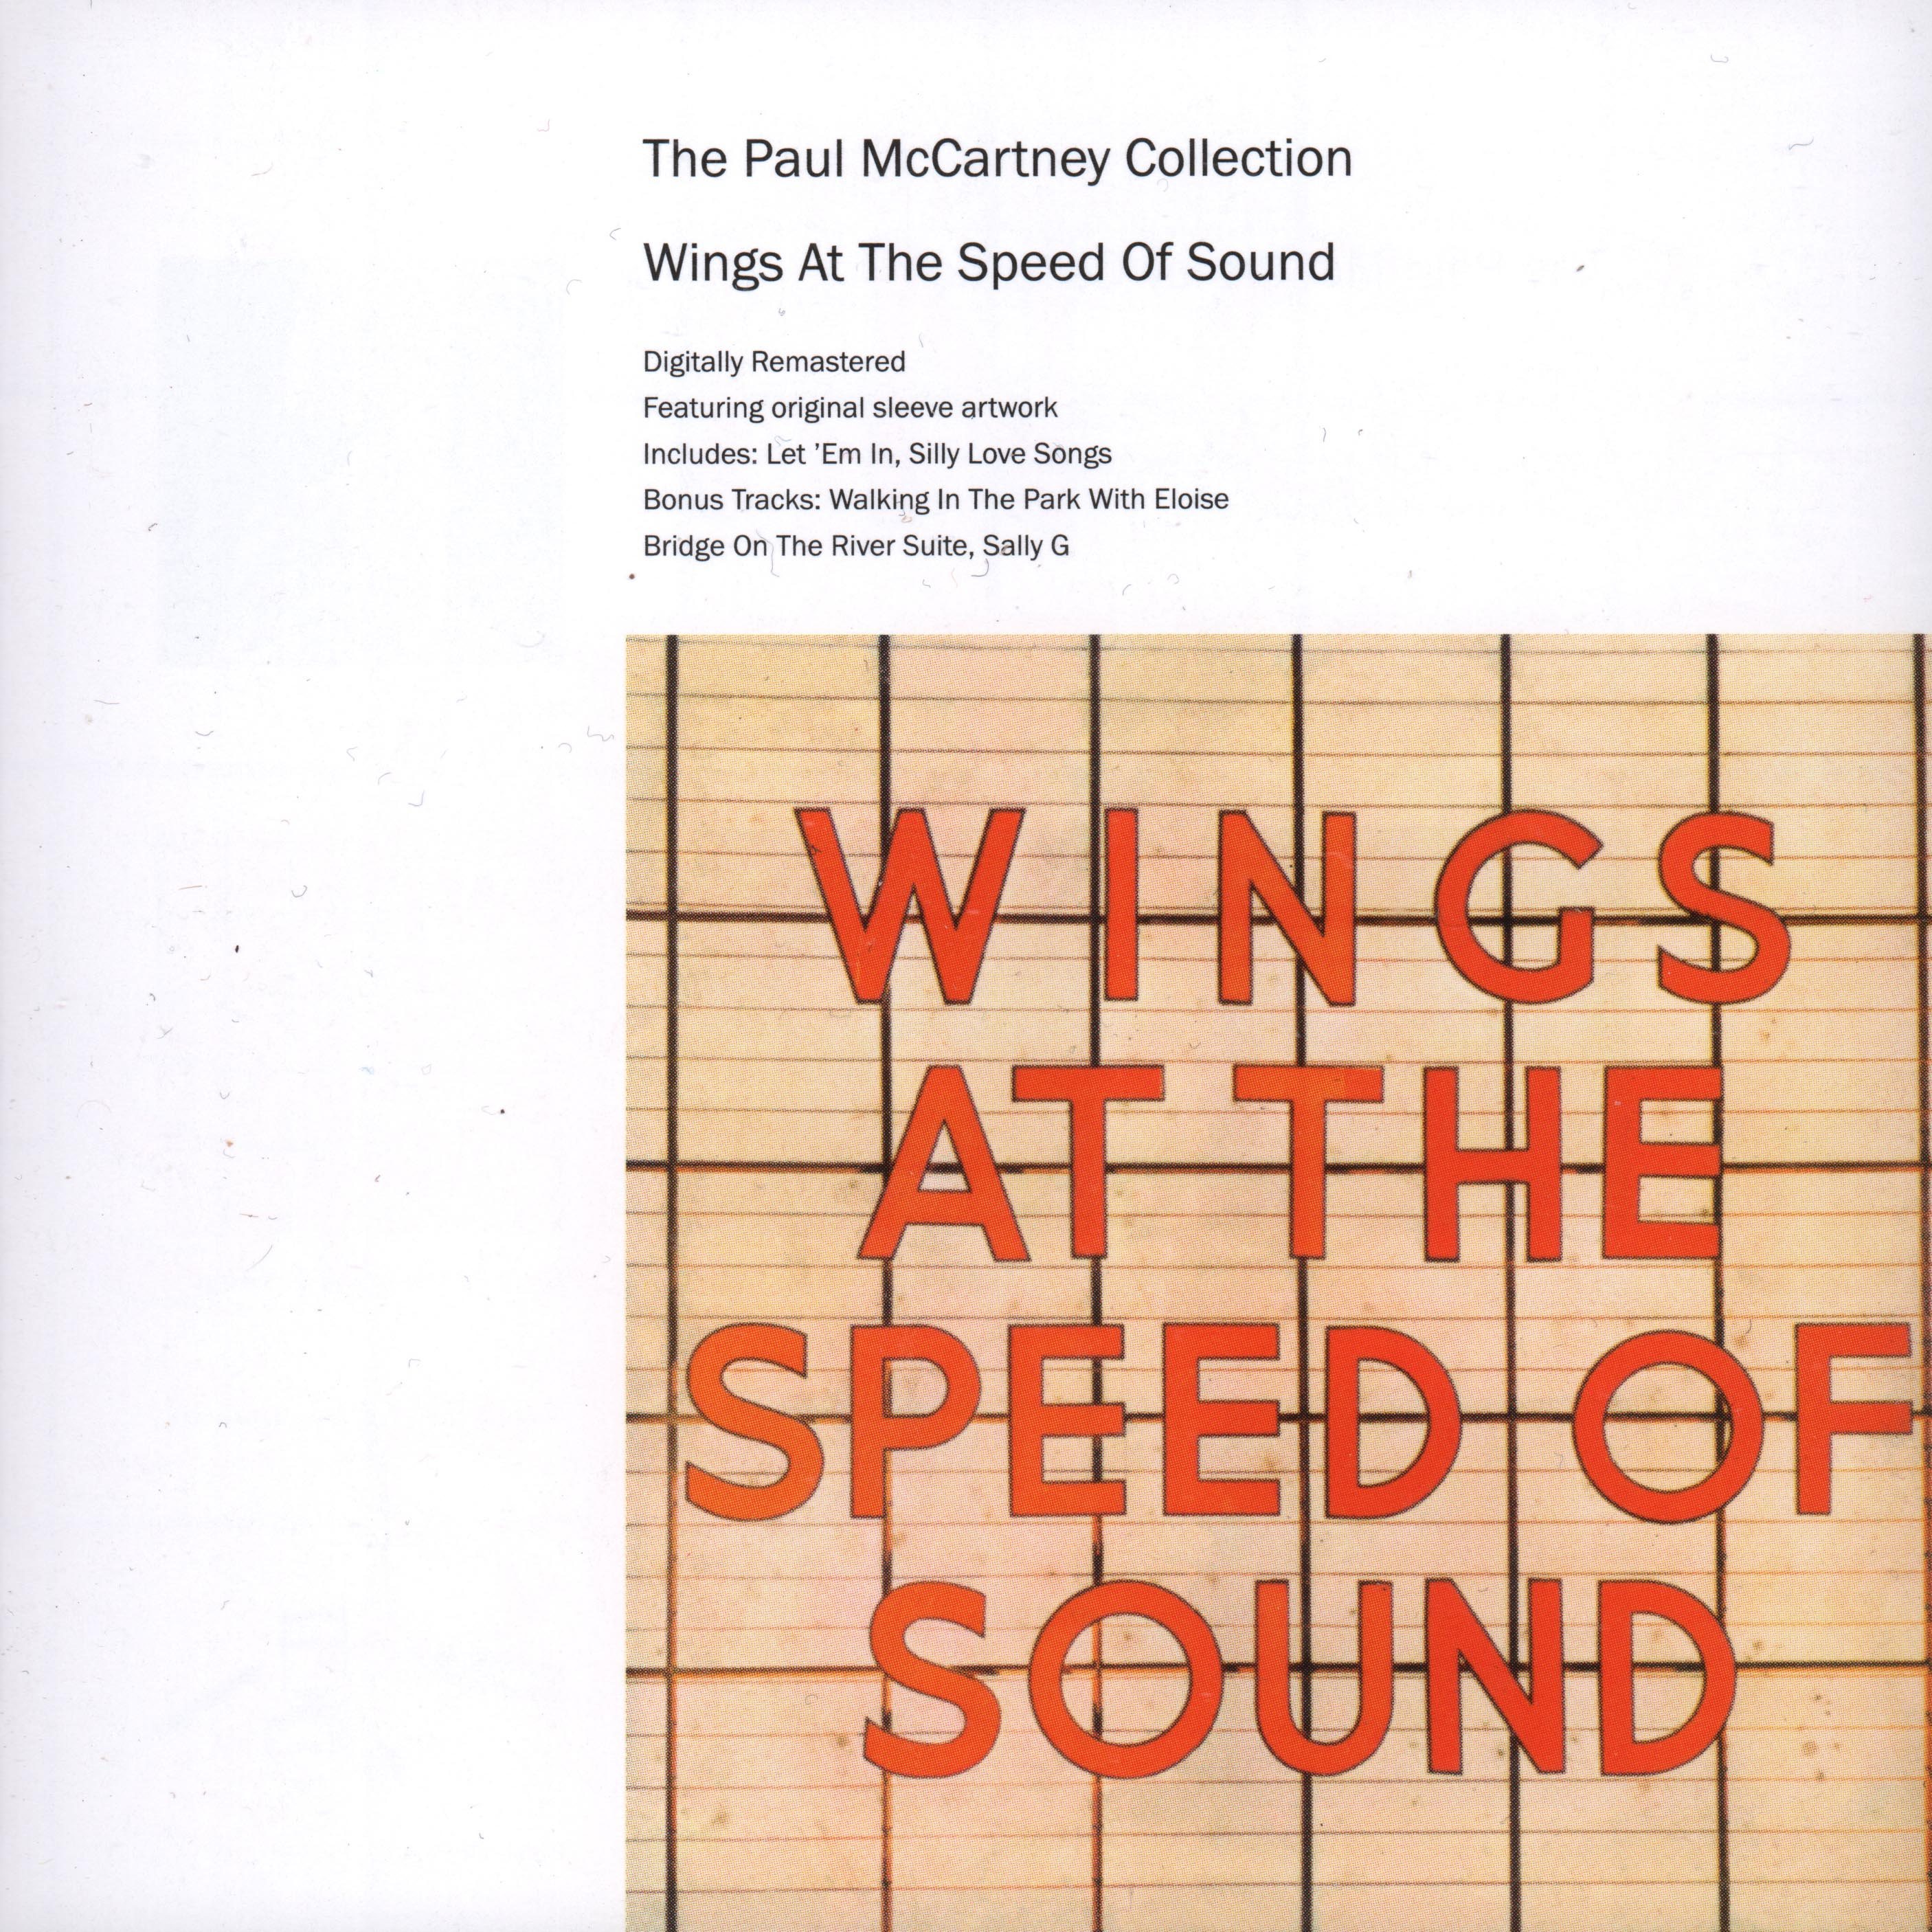 Sound paul. CD Paul MCCARTNEY 1971. Paul MCCARTNEY Wings at the Speed of Sound. Wings at the Speed of Sound 1976. Wings at the Speed of Sound пол Маккартни.